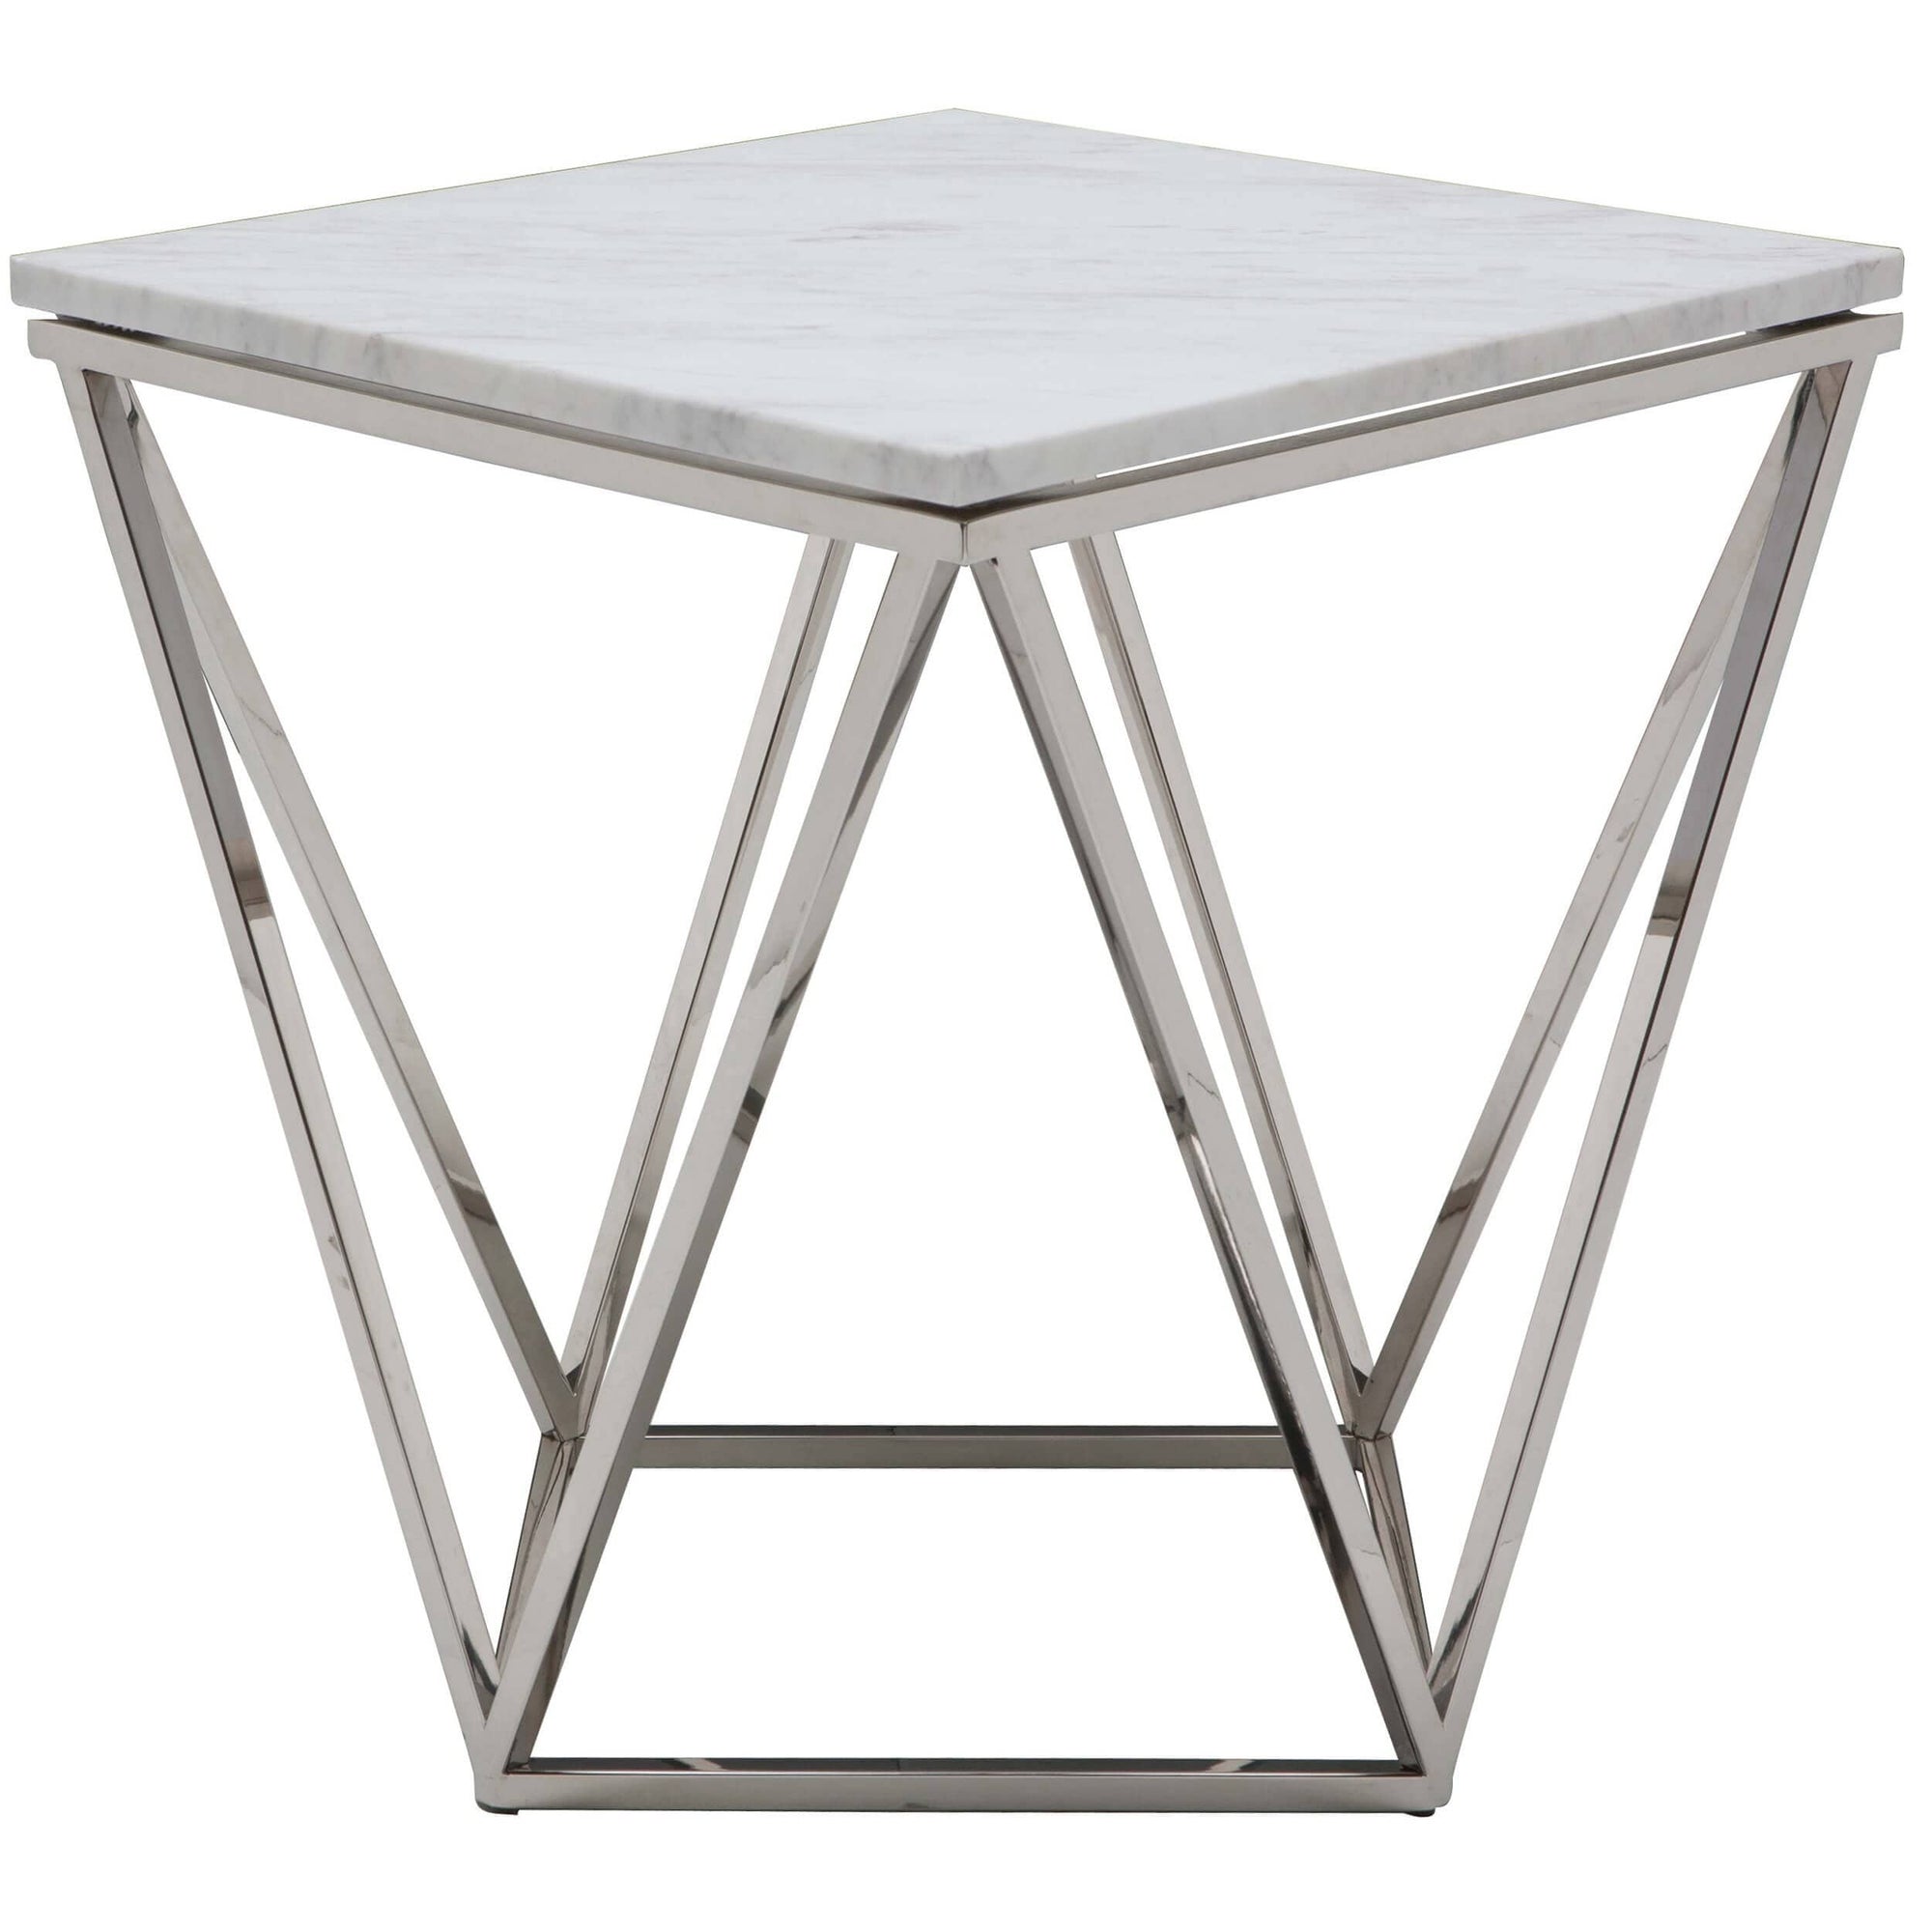 Jasmine Side Table, White/Chrome Base – High Fashion Home